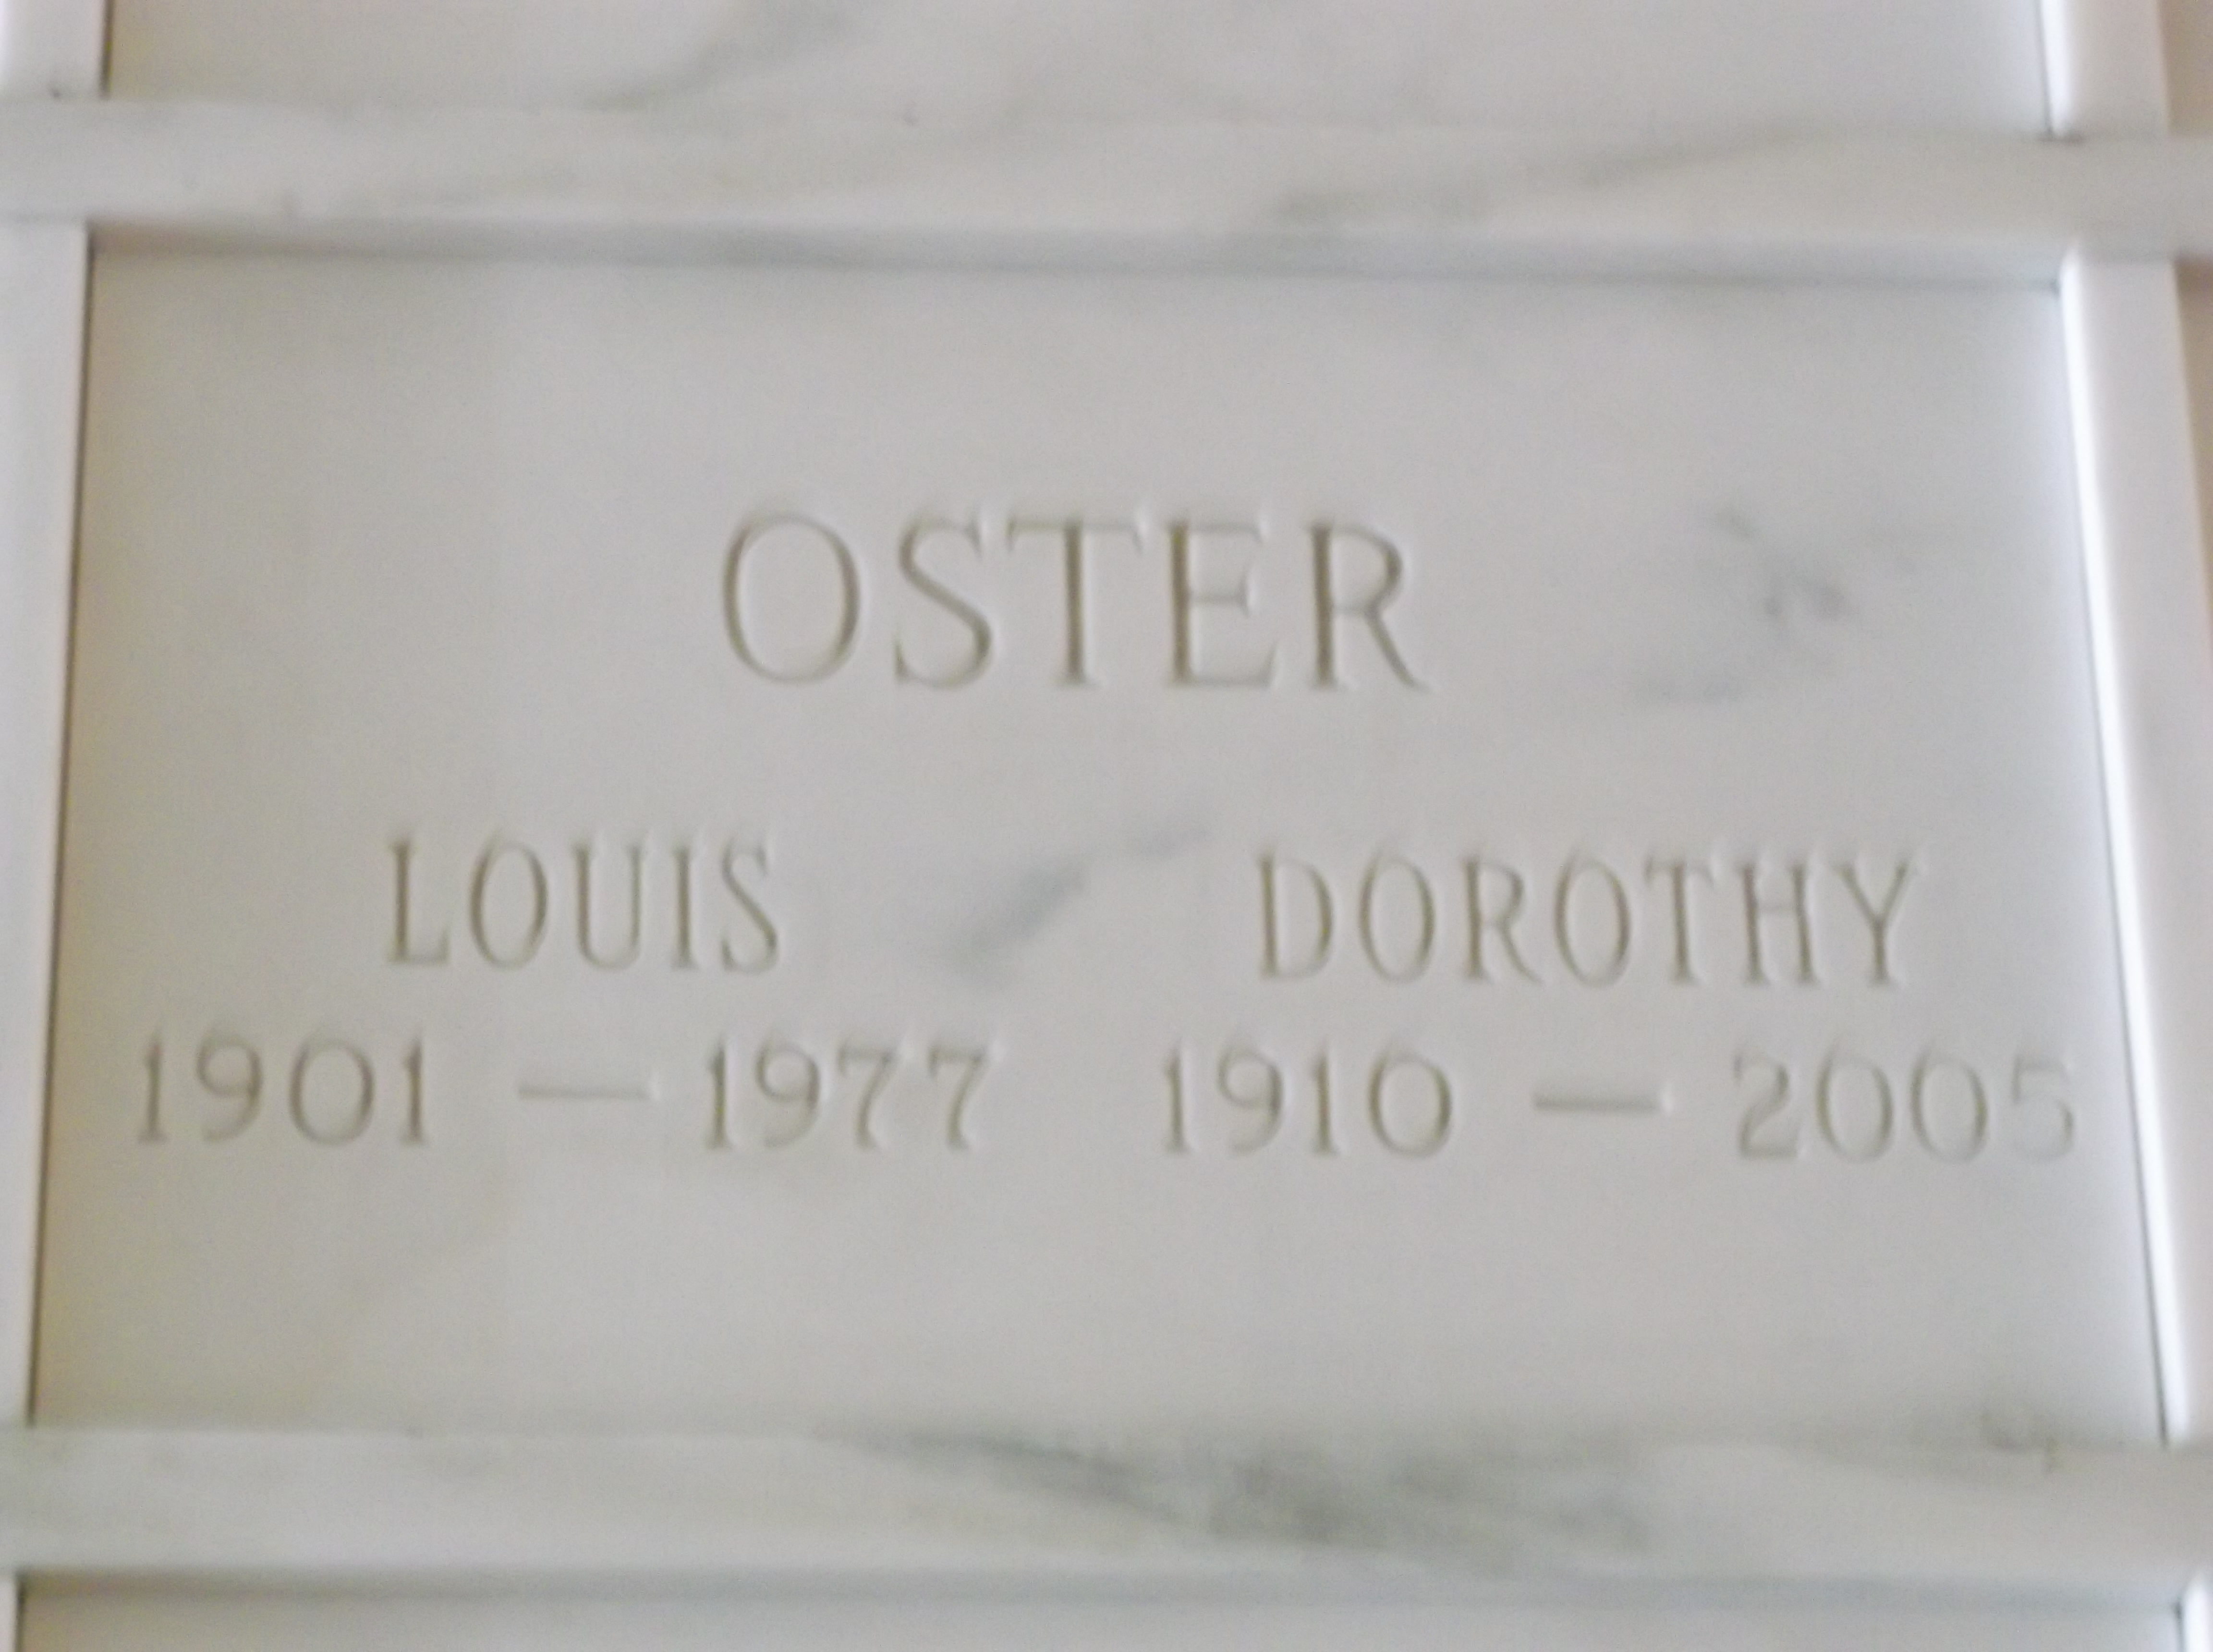 Dorothy Oster